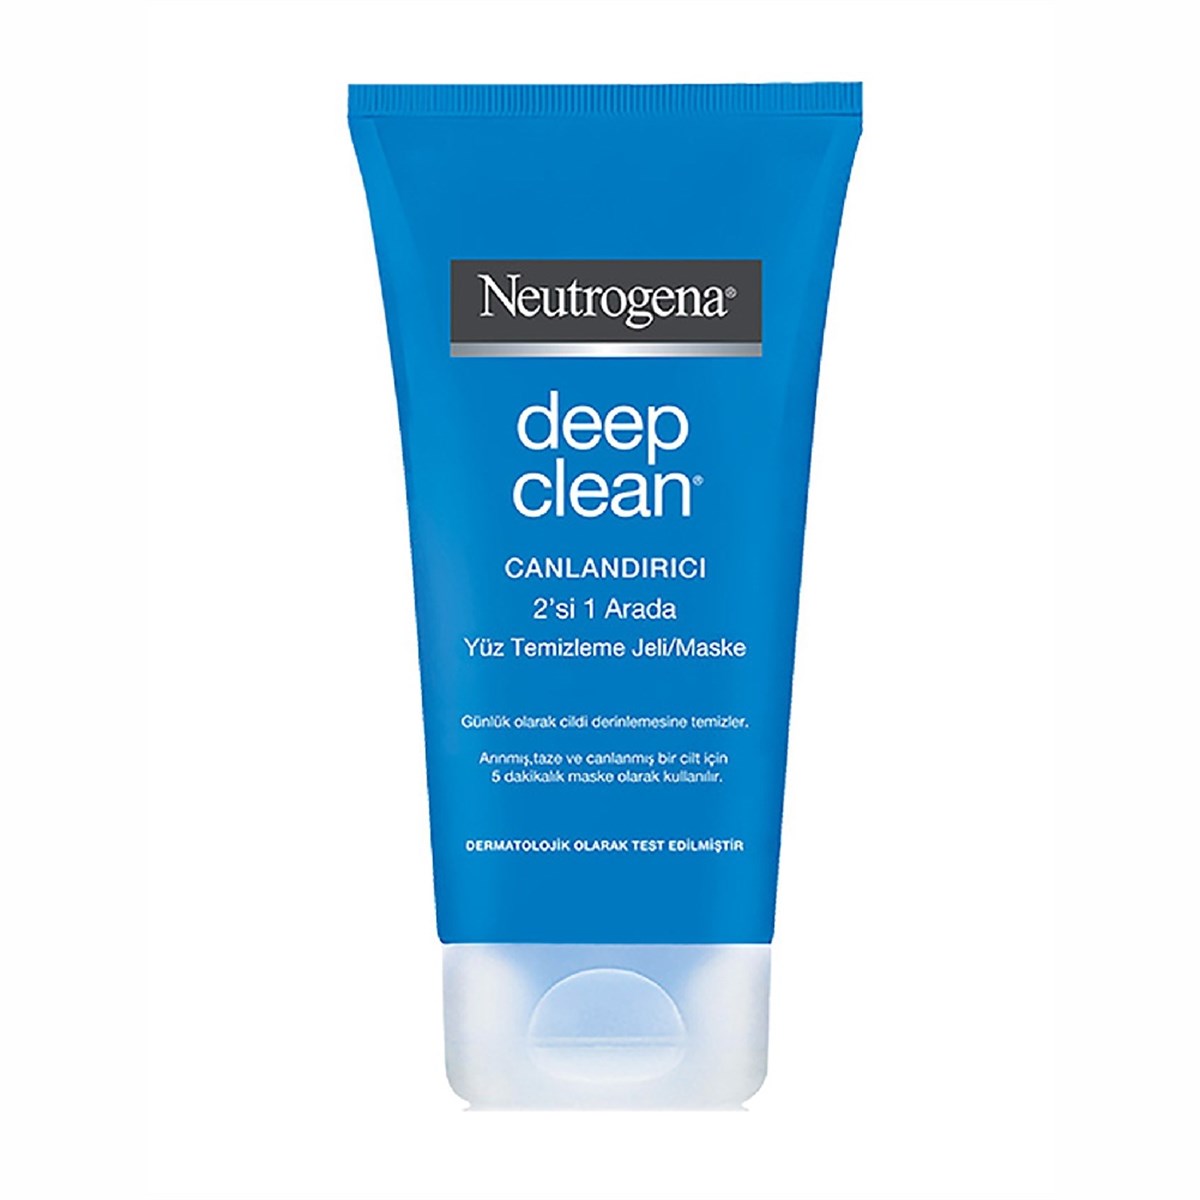 Neutrogena Deep Clean Canlandırıcı Yüz Temizleme Jeli/Maske 150 ml - Platin